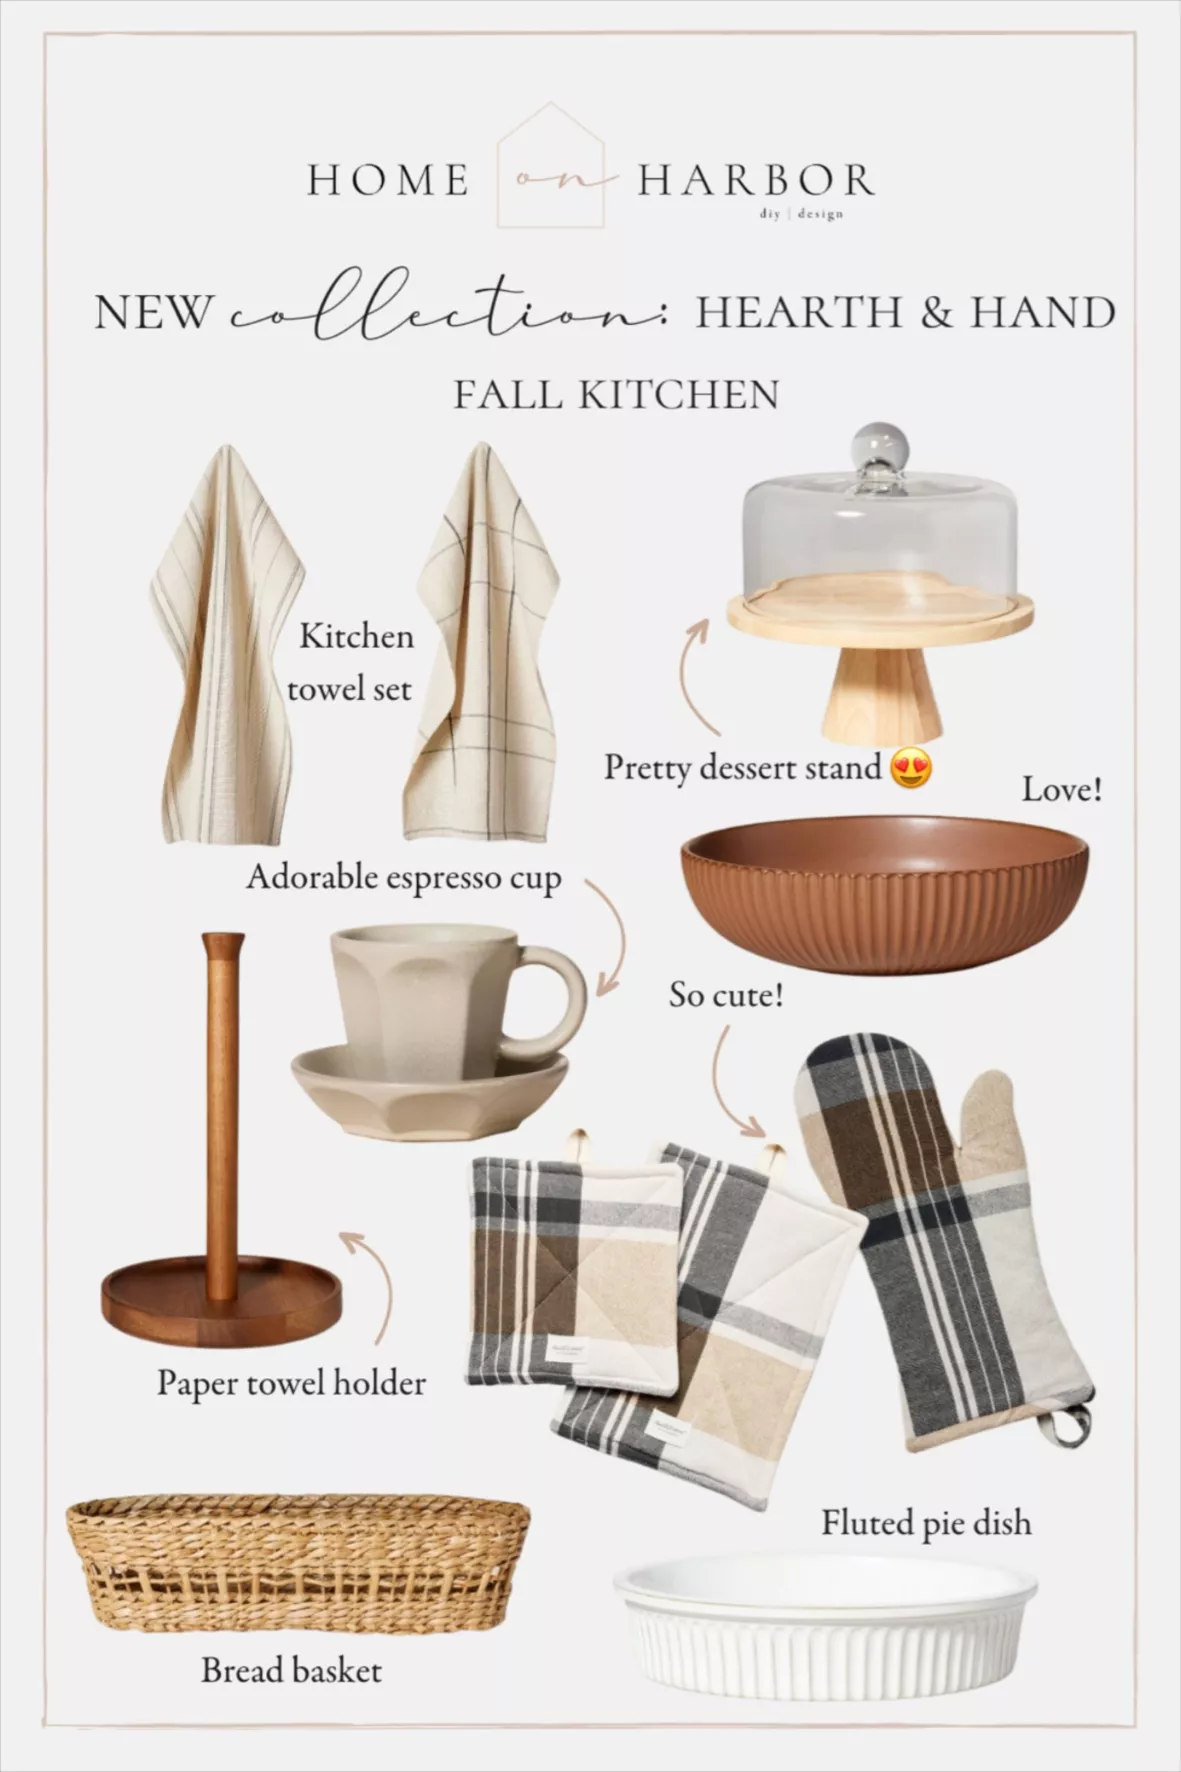 kitchen towel in bread basket 2